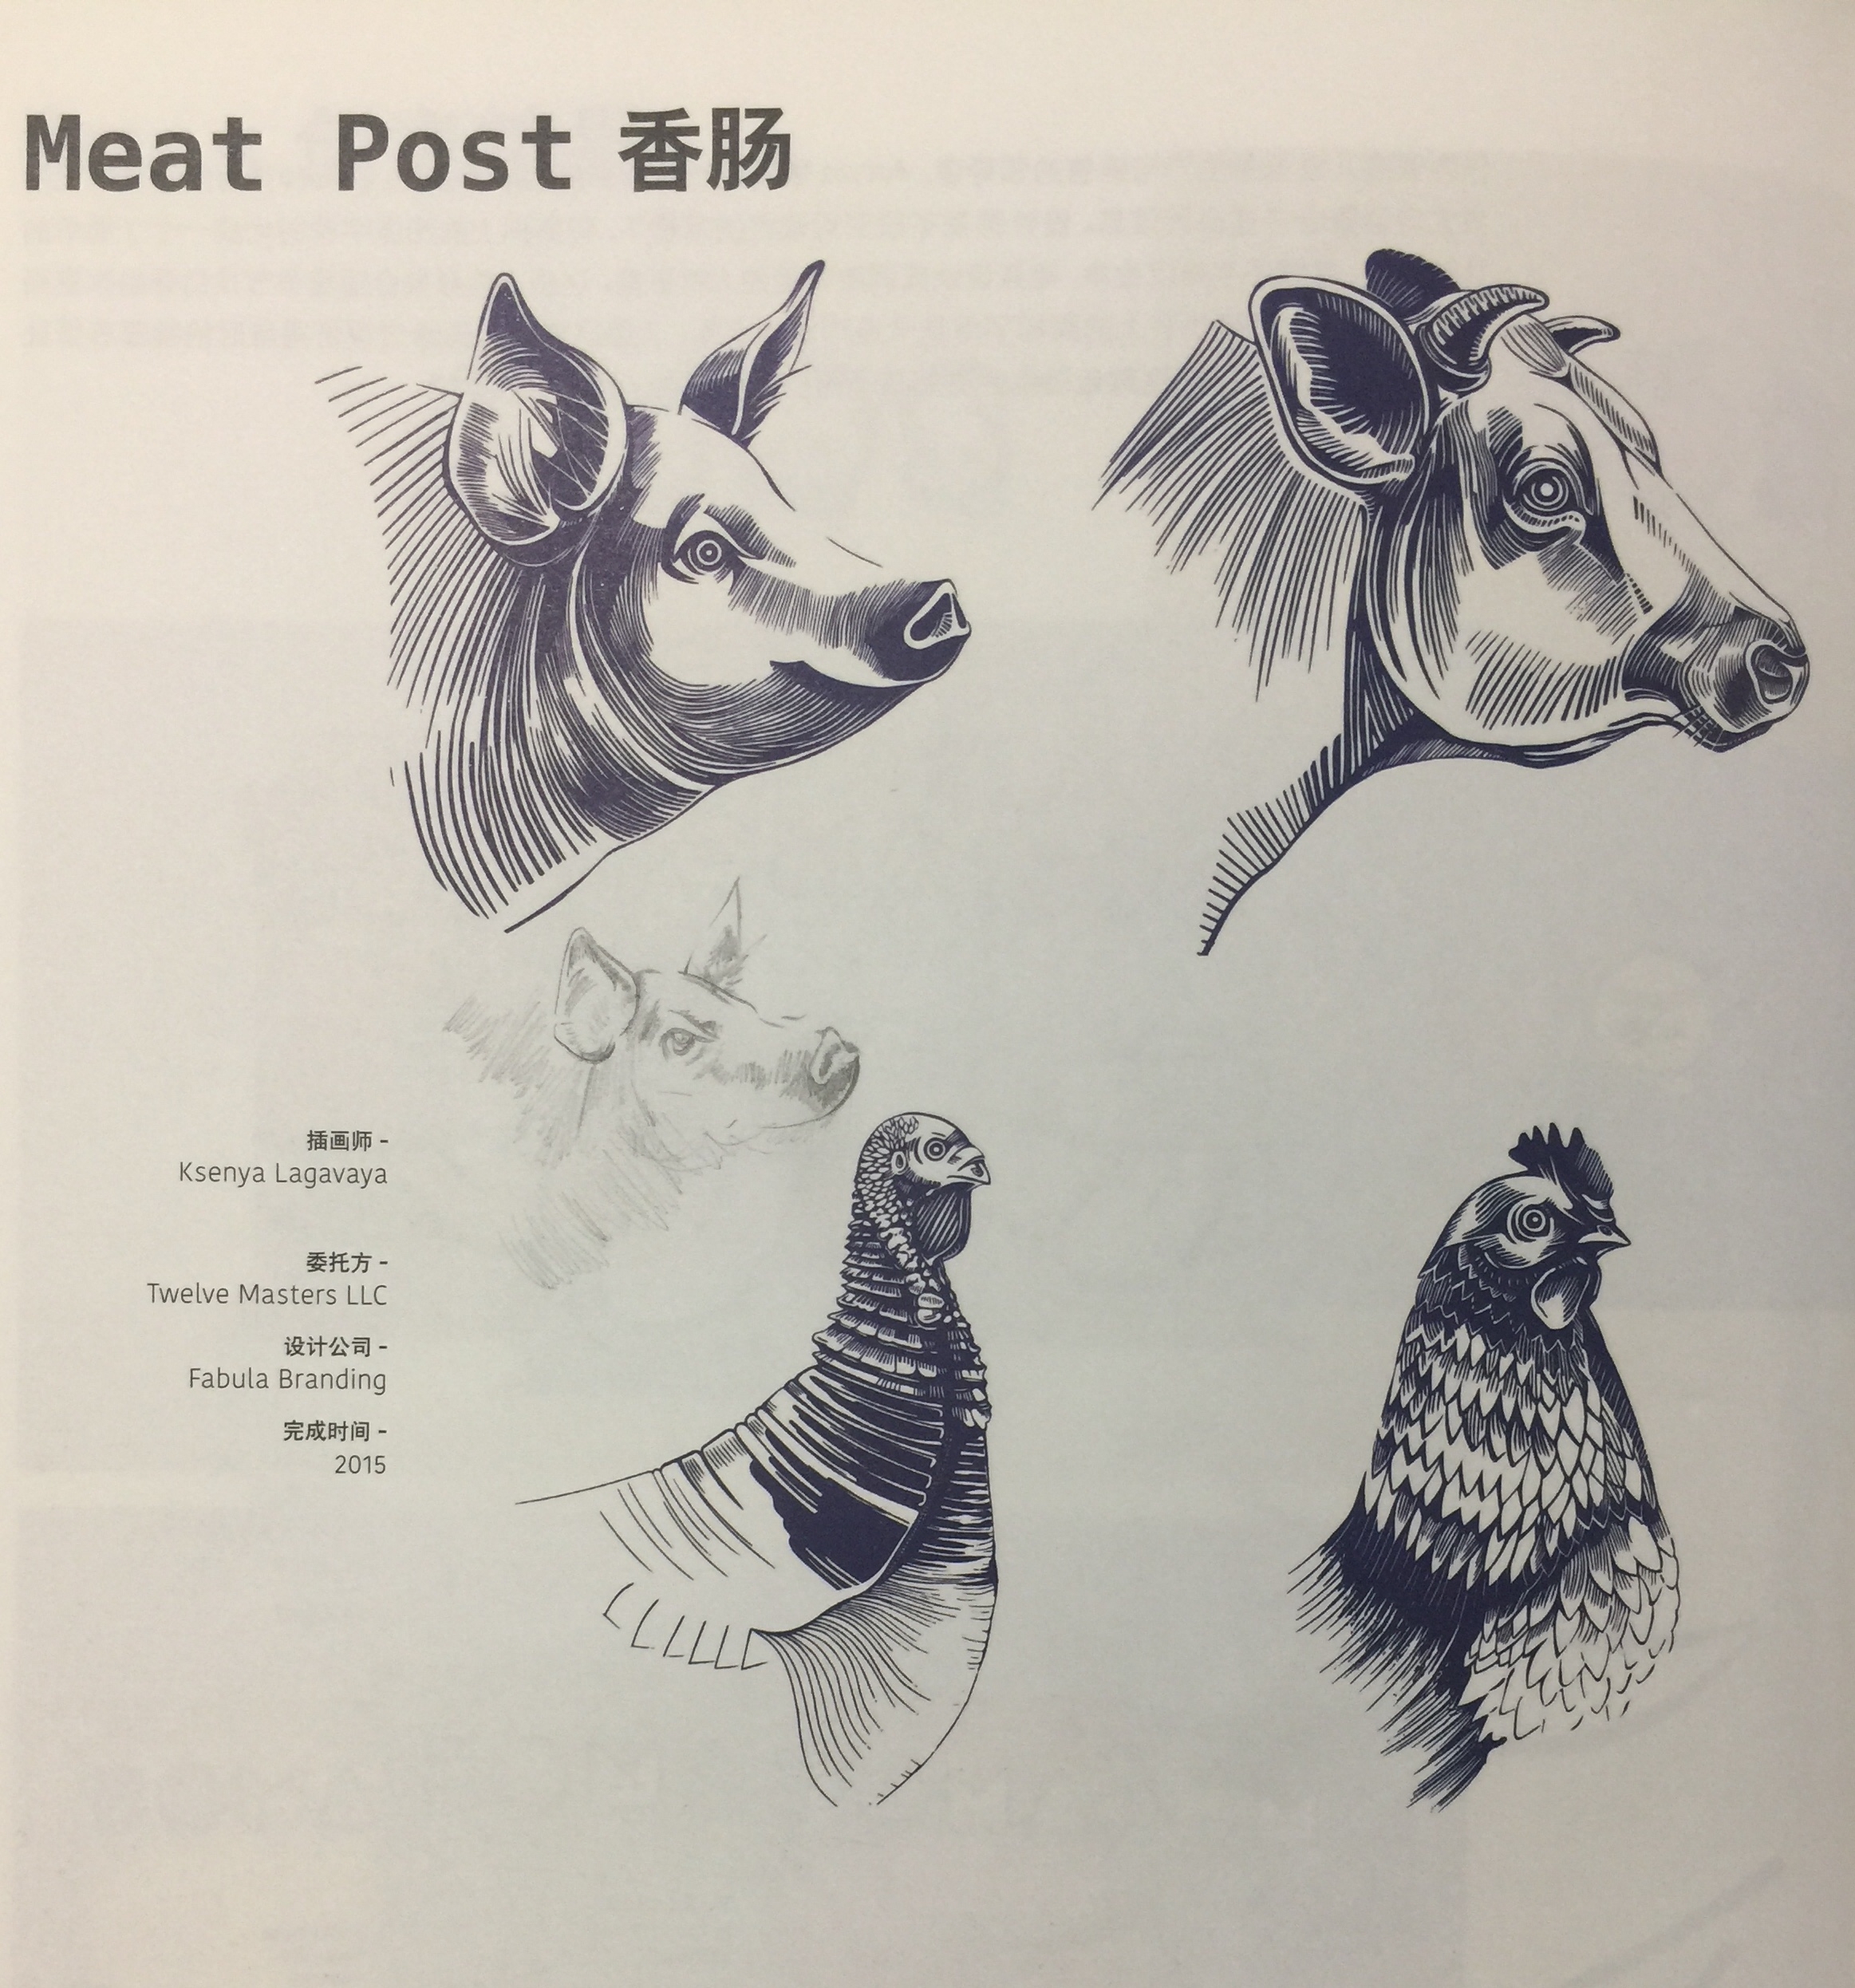 猪肉、小牛肉、鸡肉和火鸡肉香肠包装设计